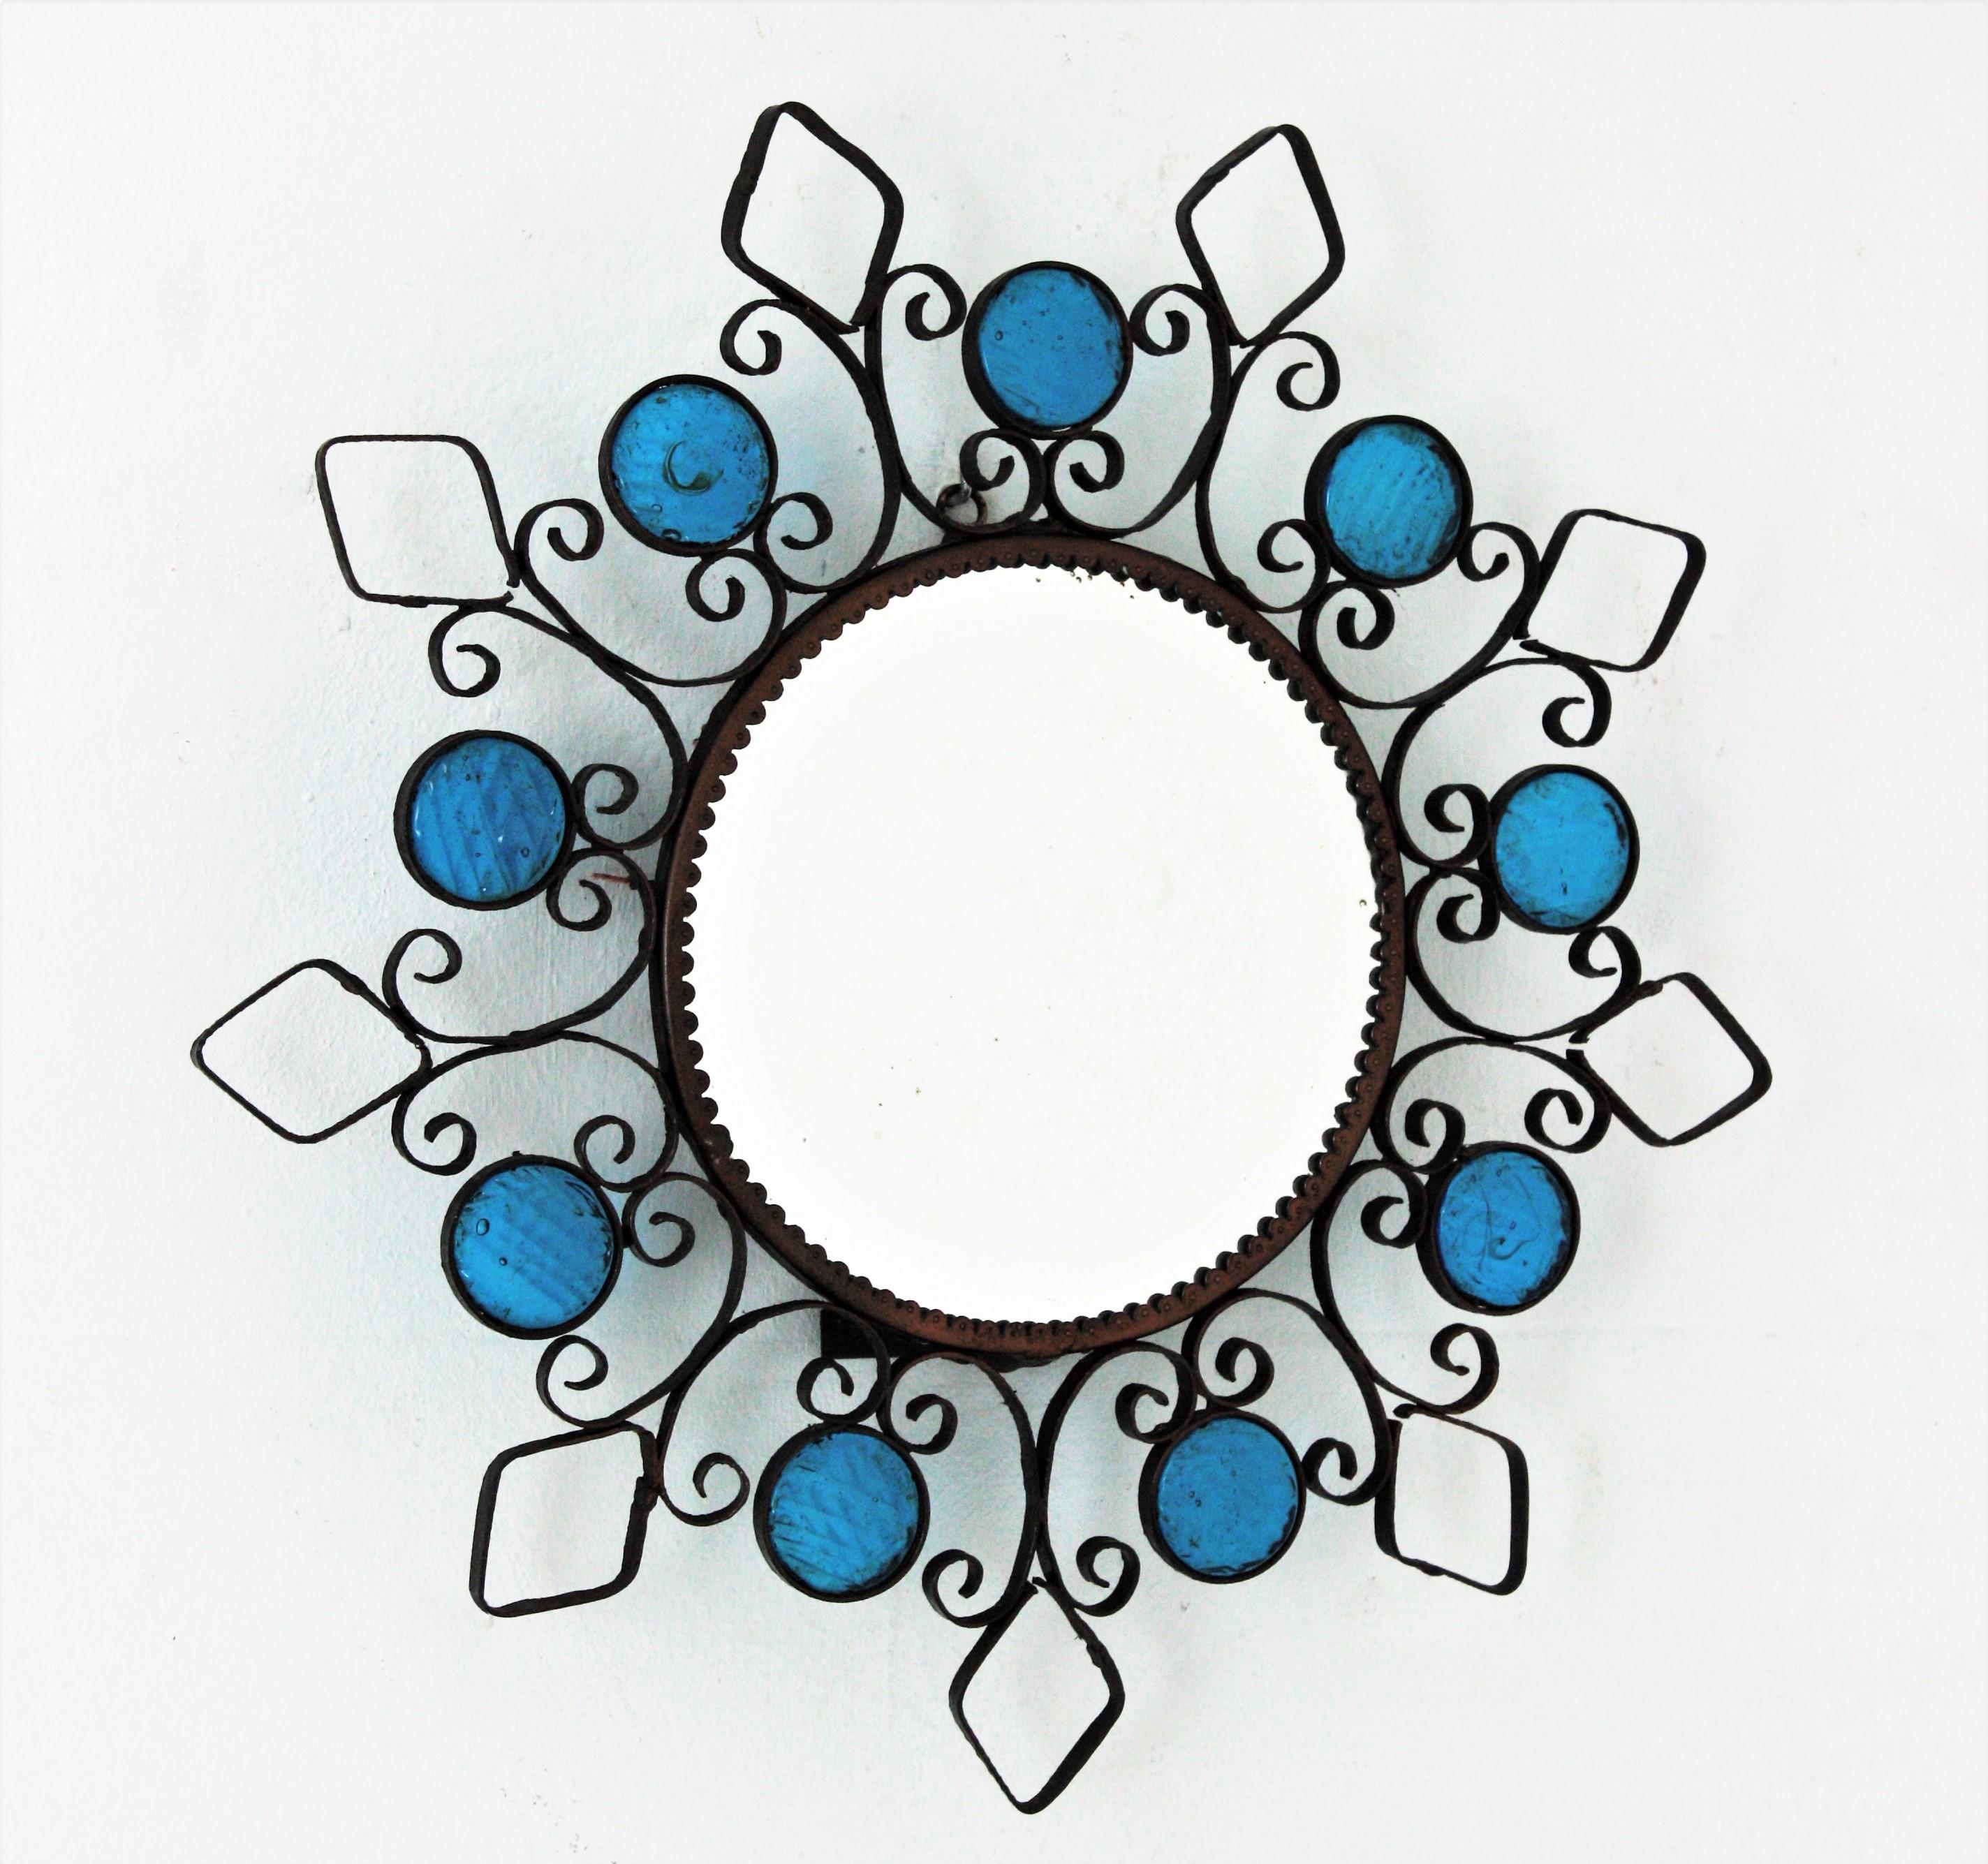 Magnifique miroir soleil rétro-éclairé en fer forgé accentué par des cercles en verre bleu, Espagne, années 1950.
Ce miroir mural rétroéclairé présente un cadre en fer forgé avec des détails en volutes, des losanges et des cercles ornés de petits